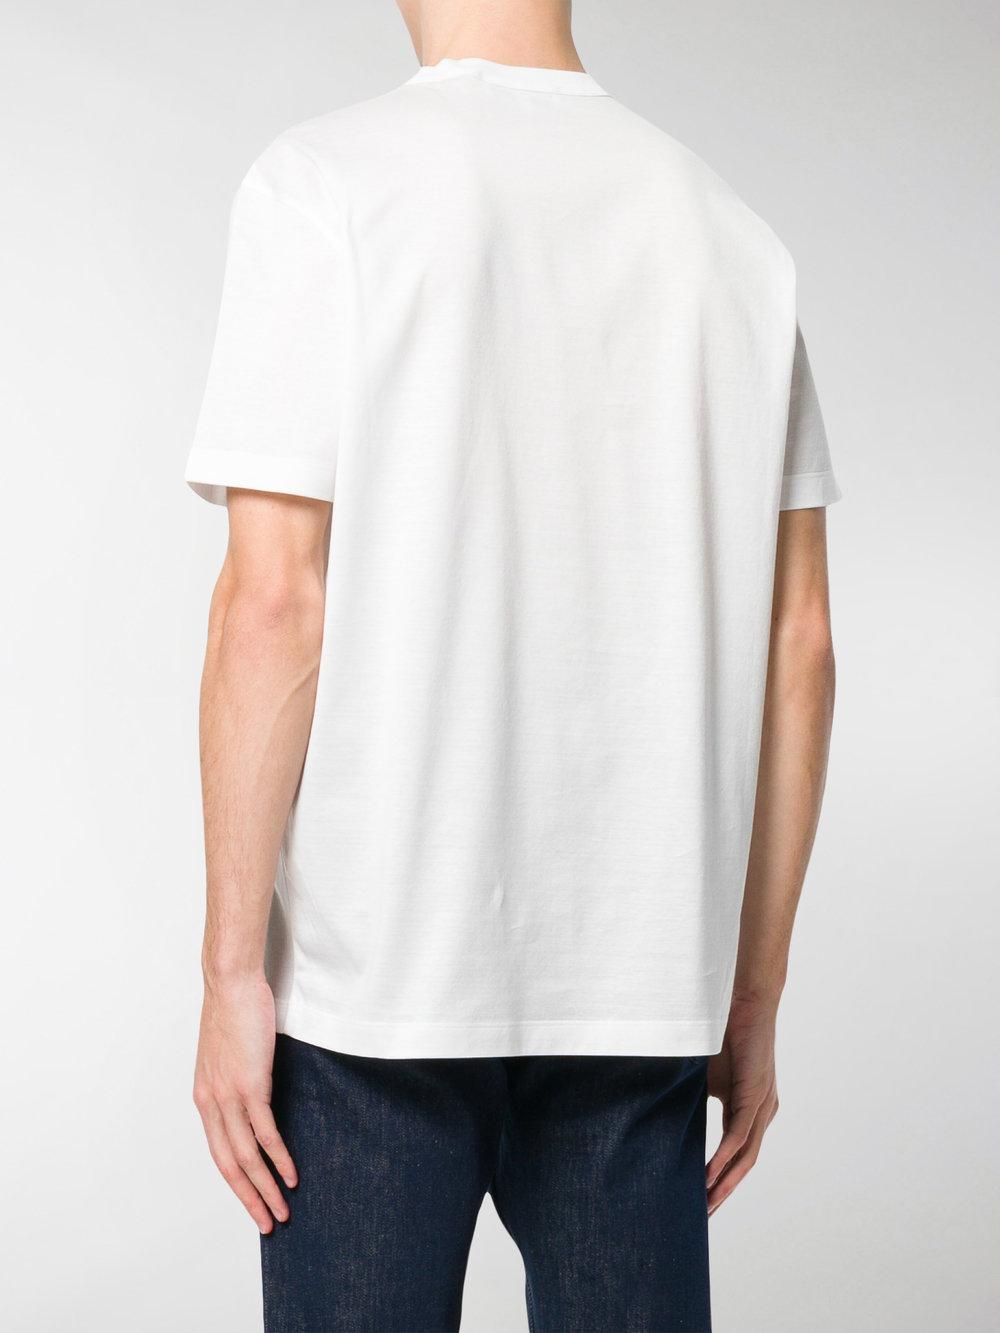 Lyst - Ferragamo Logo Printed T-shirt in White for Men